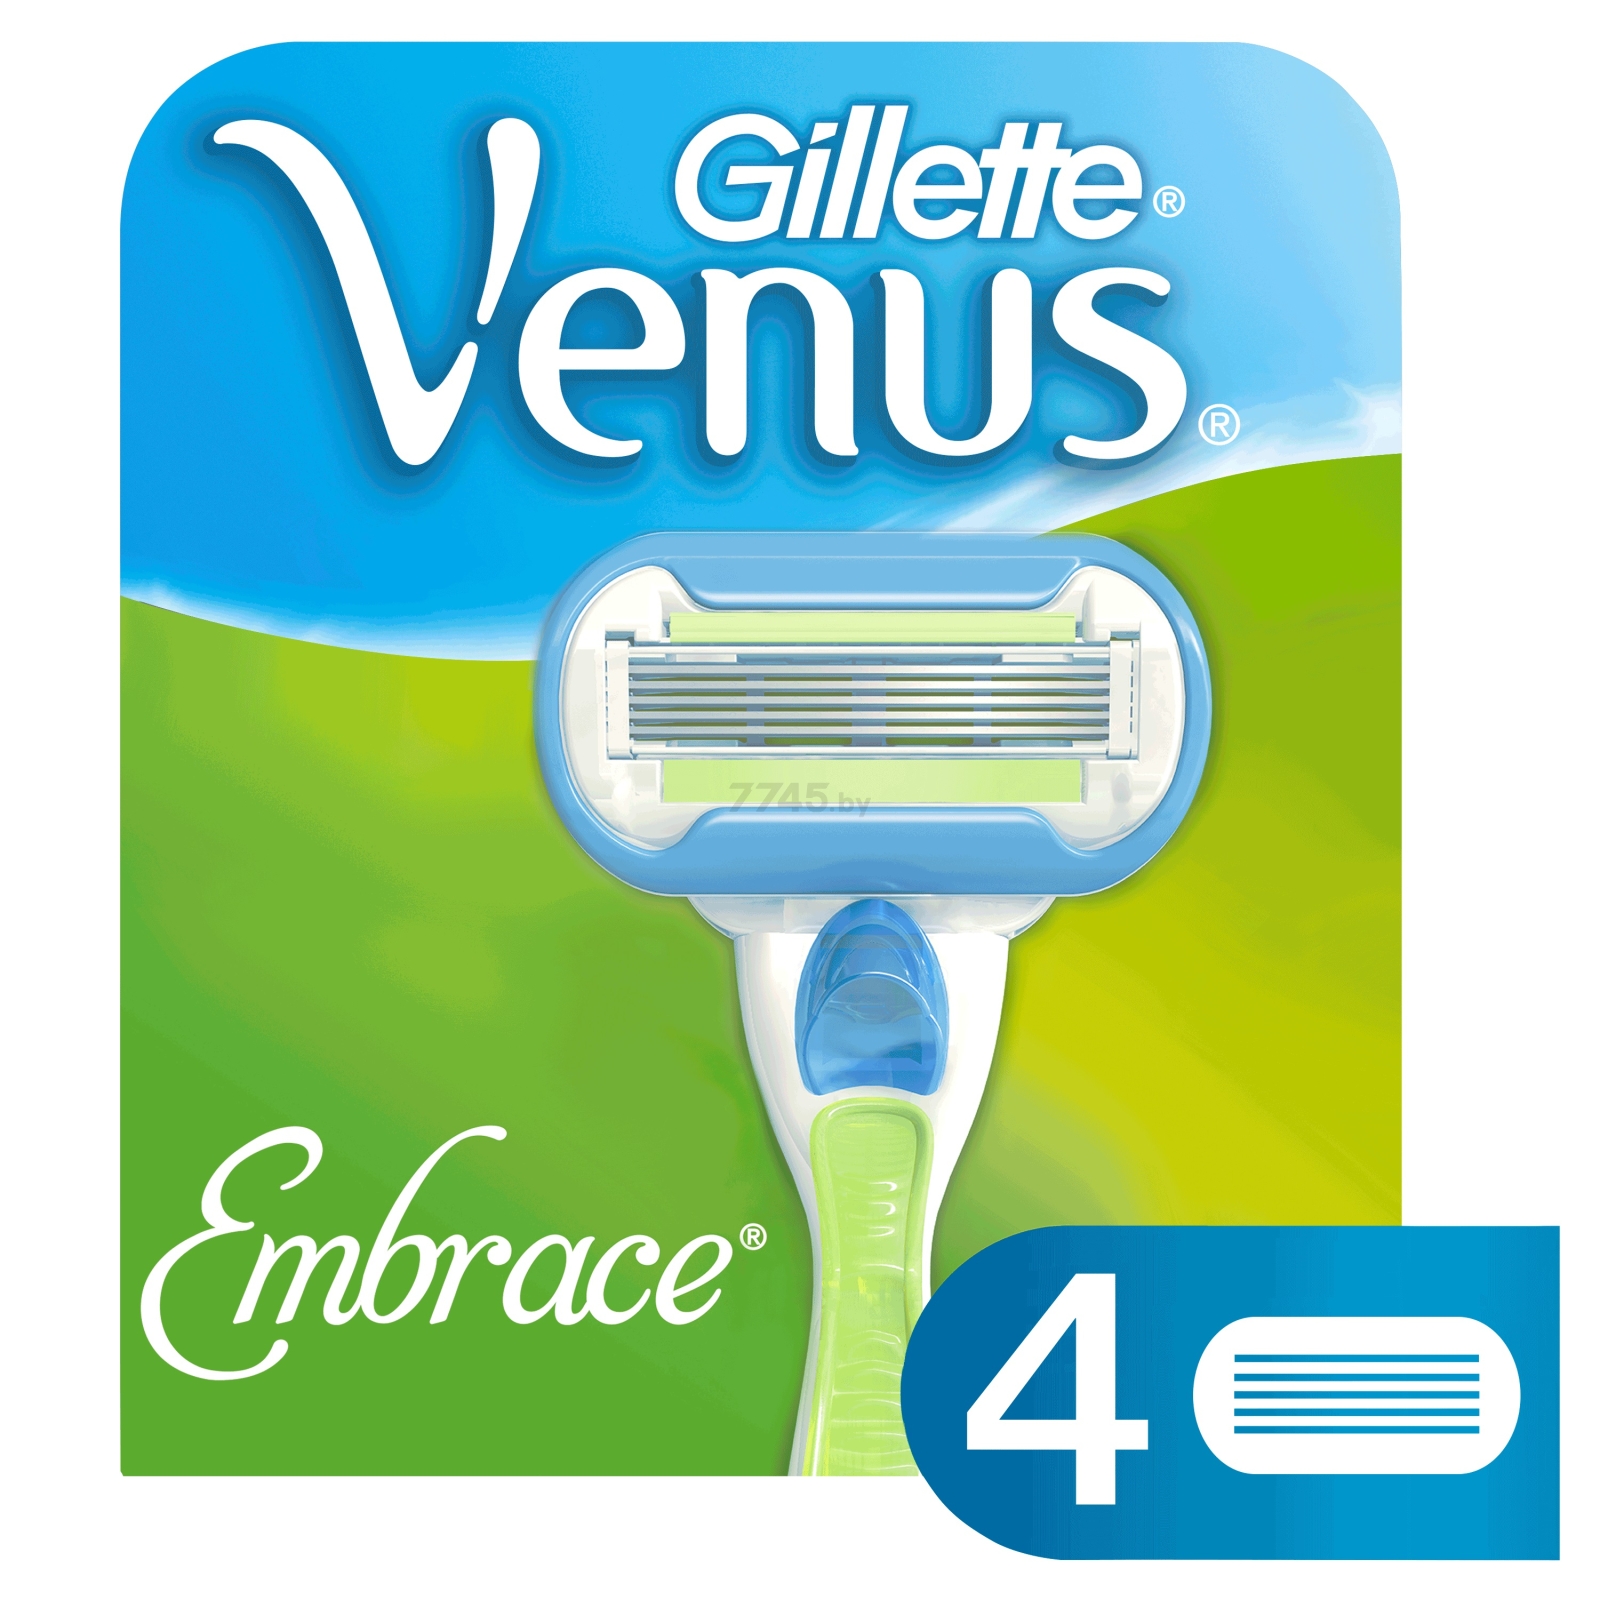 Кассеты сменные GILLETTE Venus Embrace 4 штуки (7702018955527)